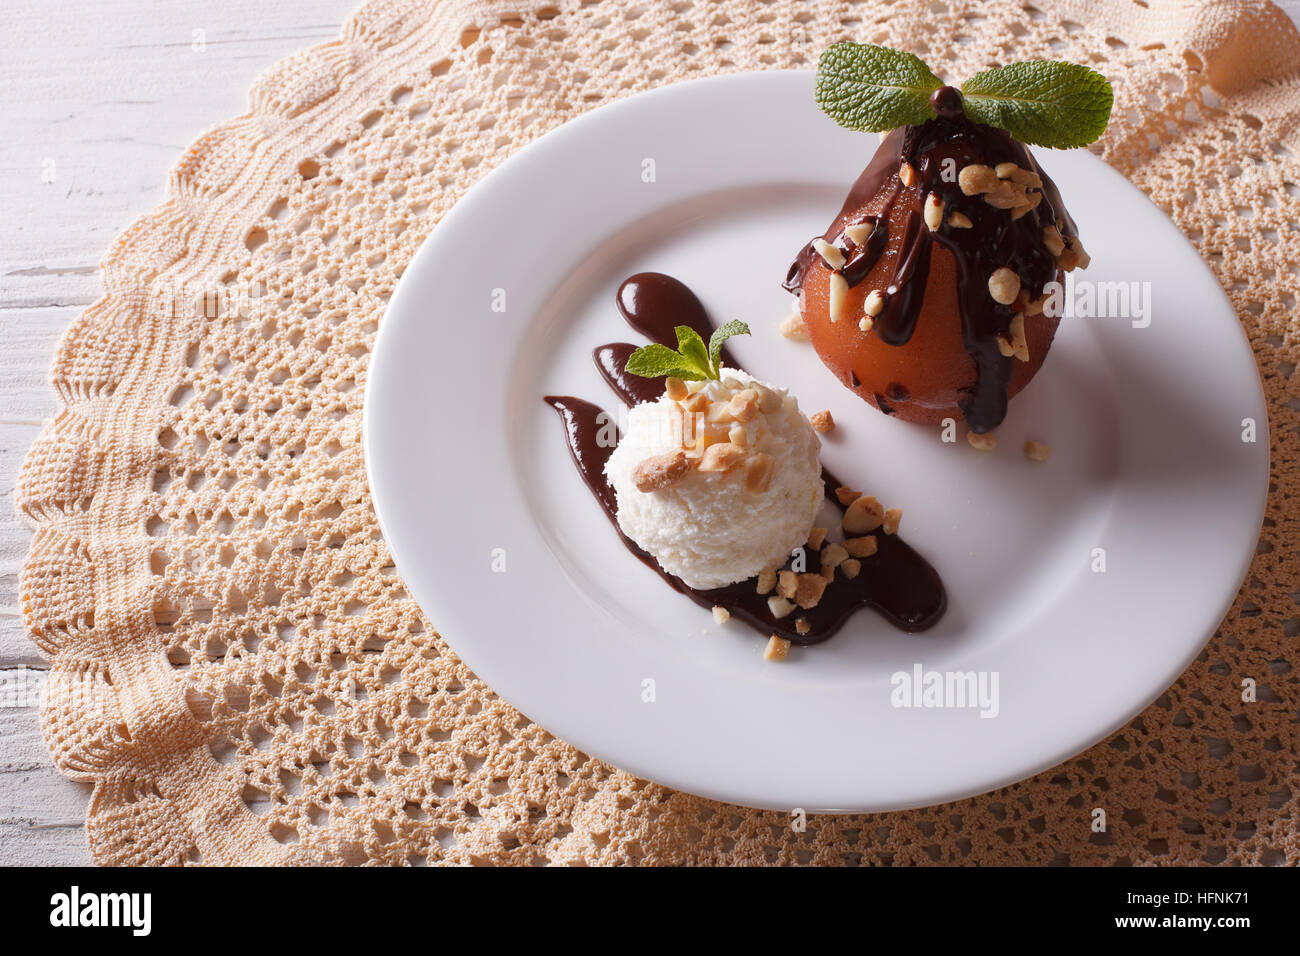 La nourriture délicieuse : poire pochée au chocolat et la crème glacée sur une assiette. Vue de dessus l'horizontale Banque D'Images